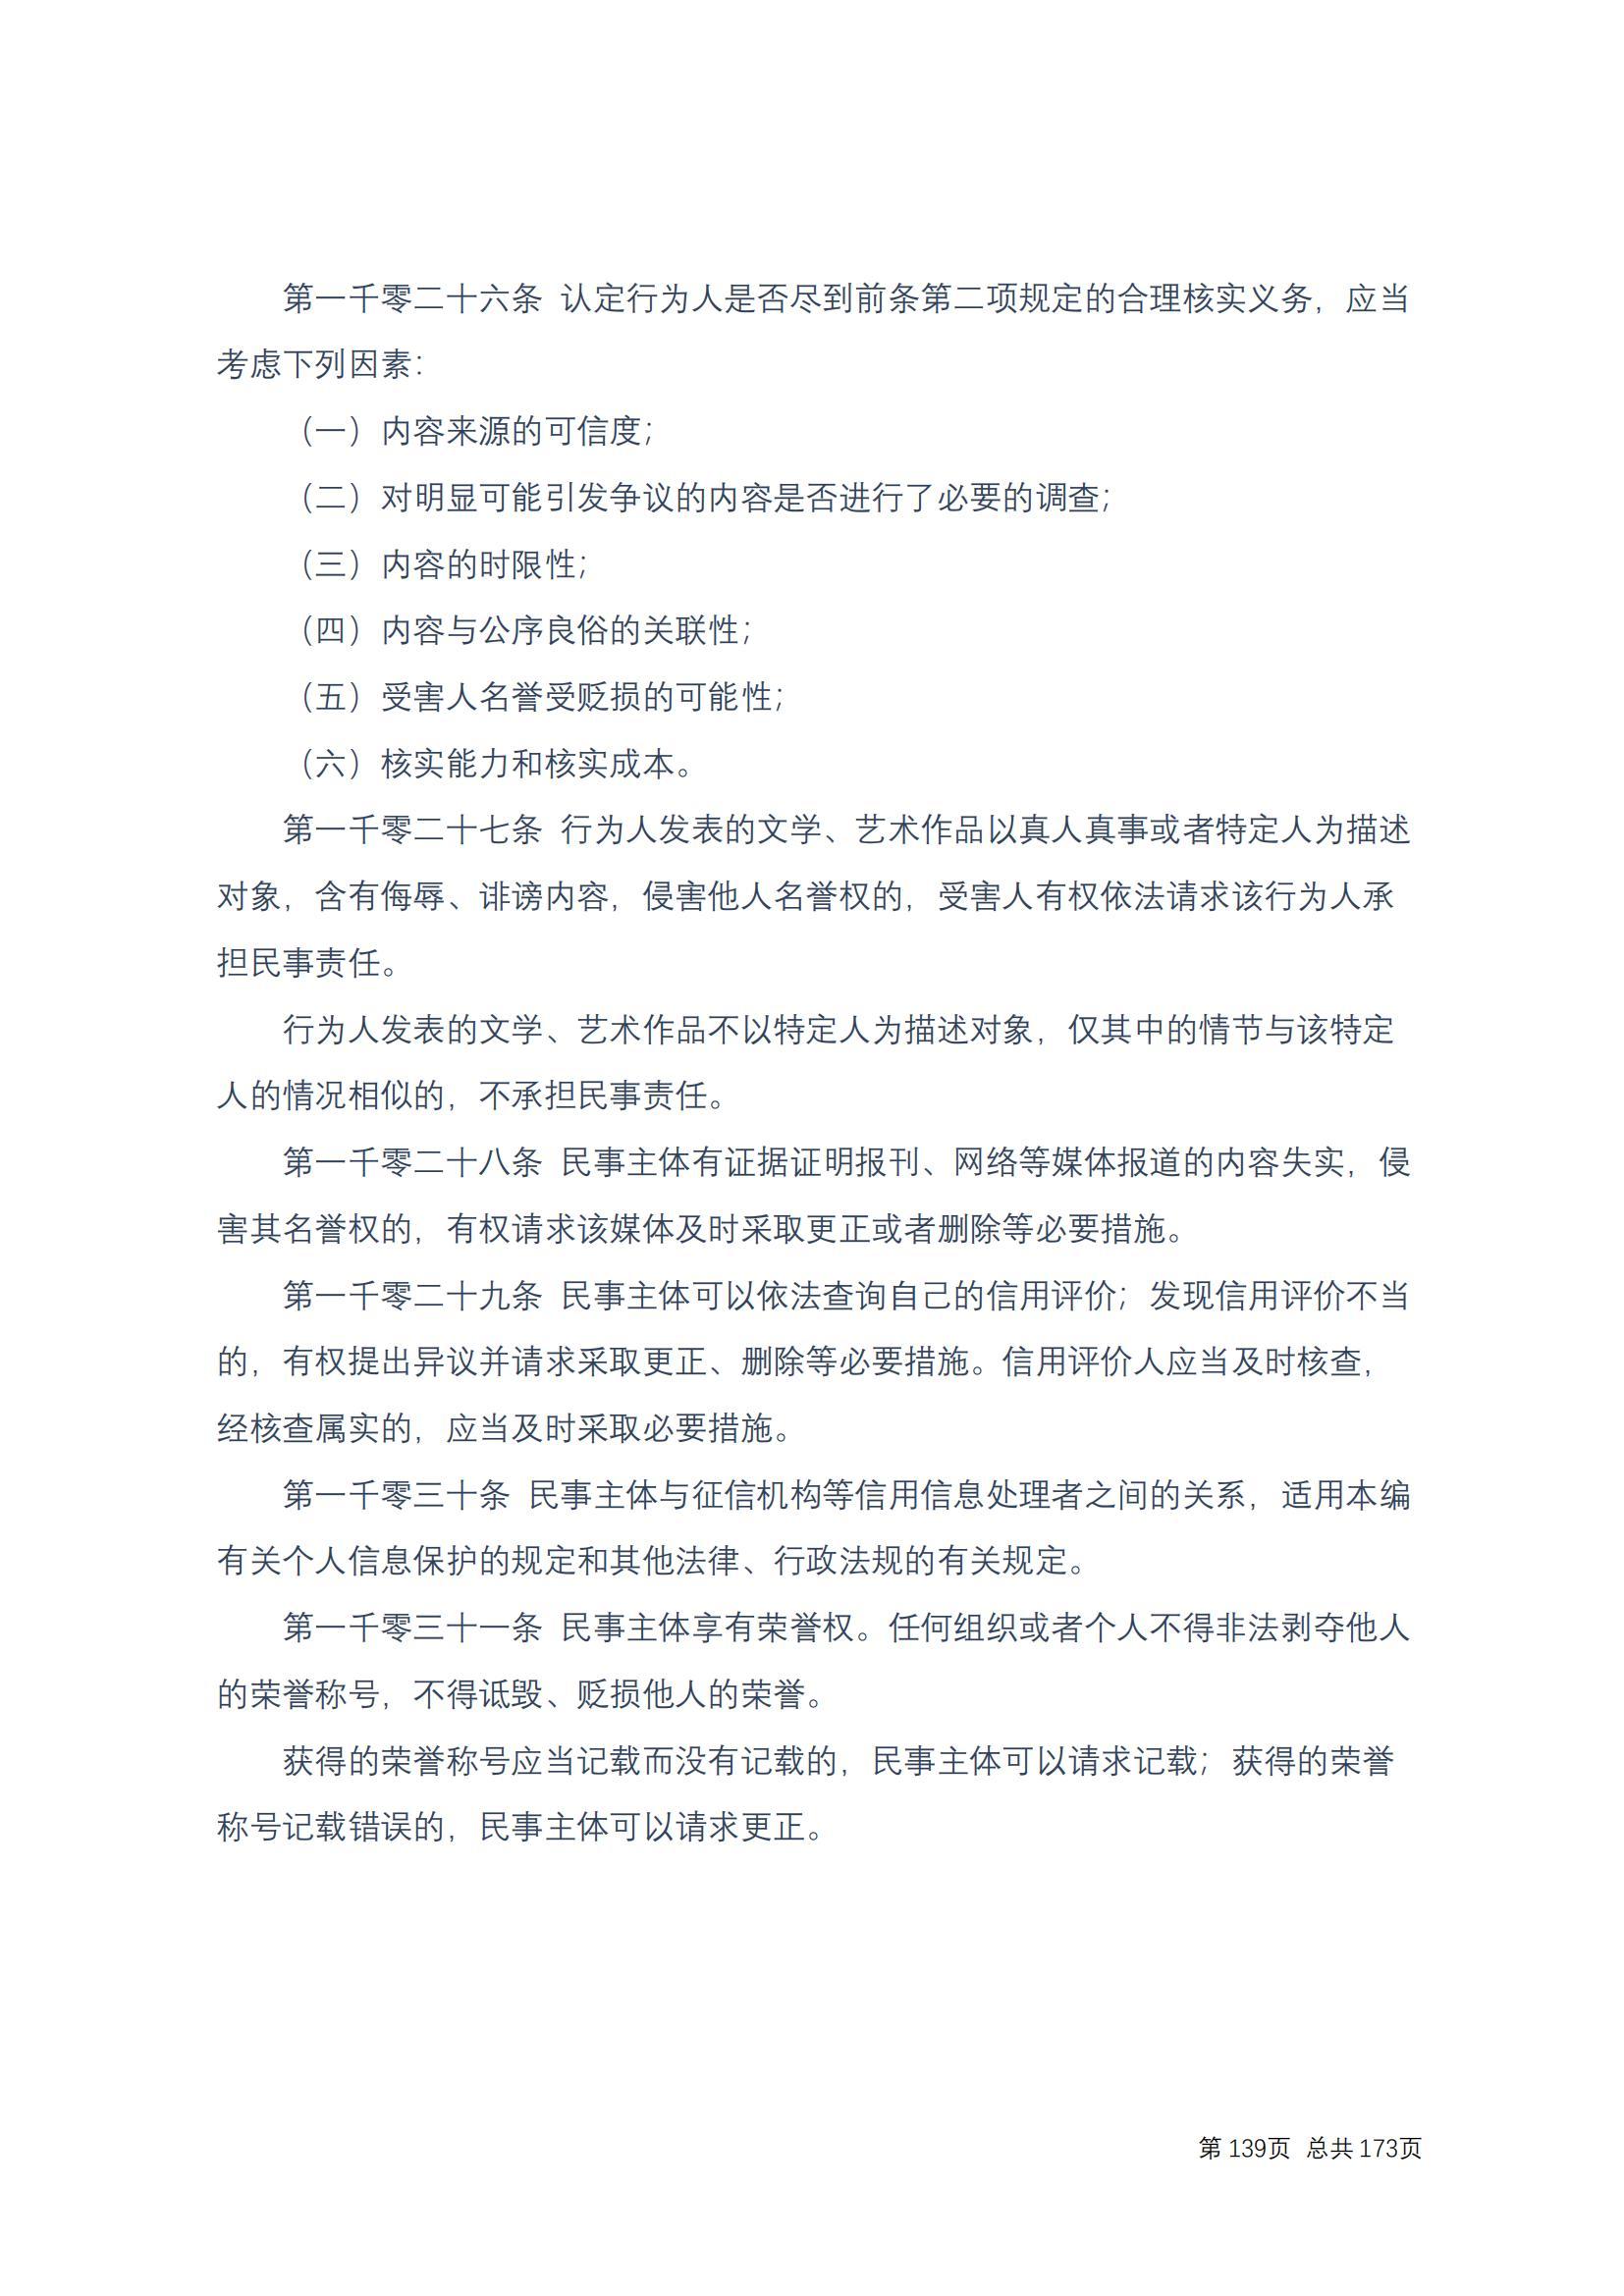 中华人民共和国民法典 修改过_138